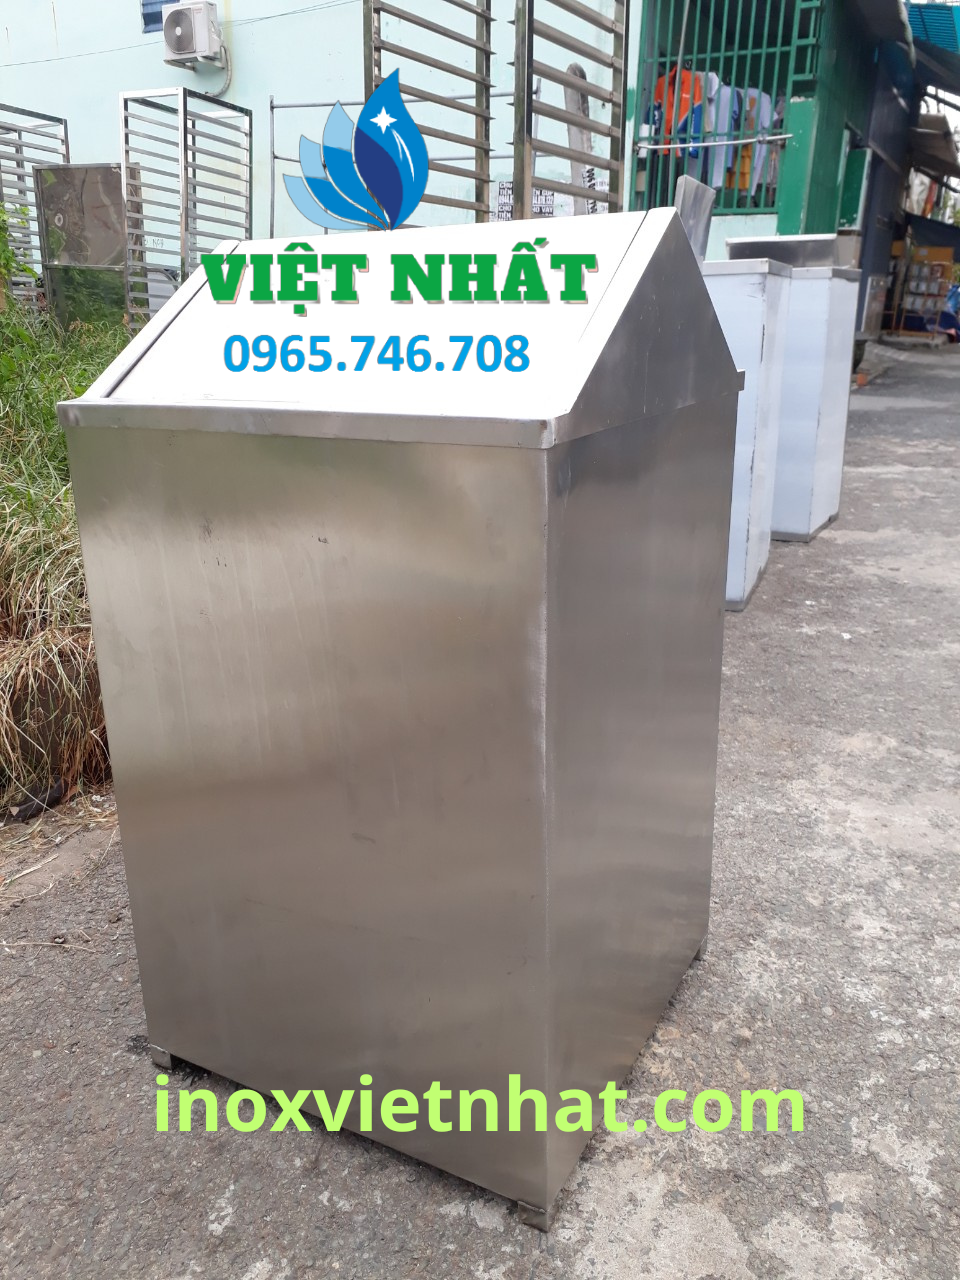 Thùng rác inox nắp lật mái nhà Việt Nhất